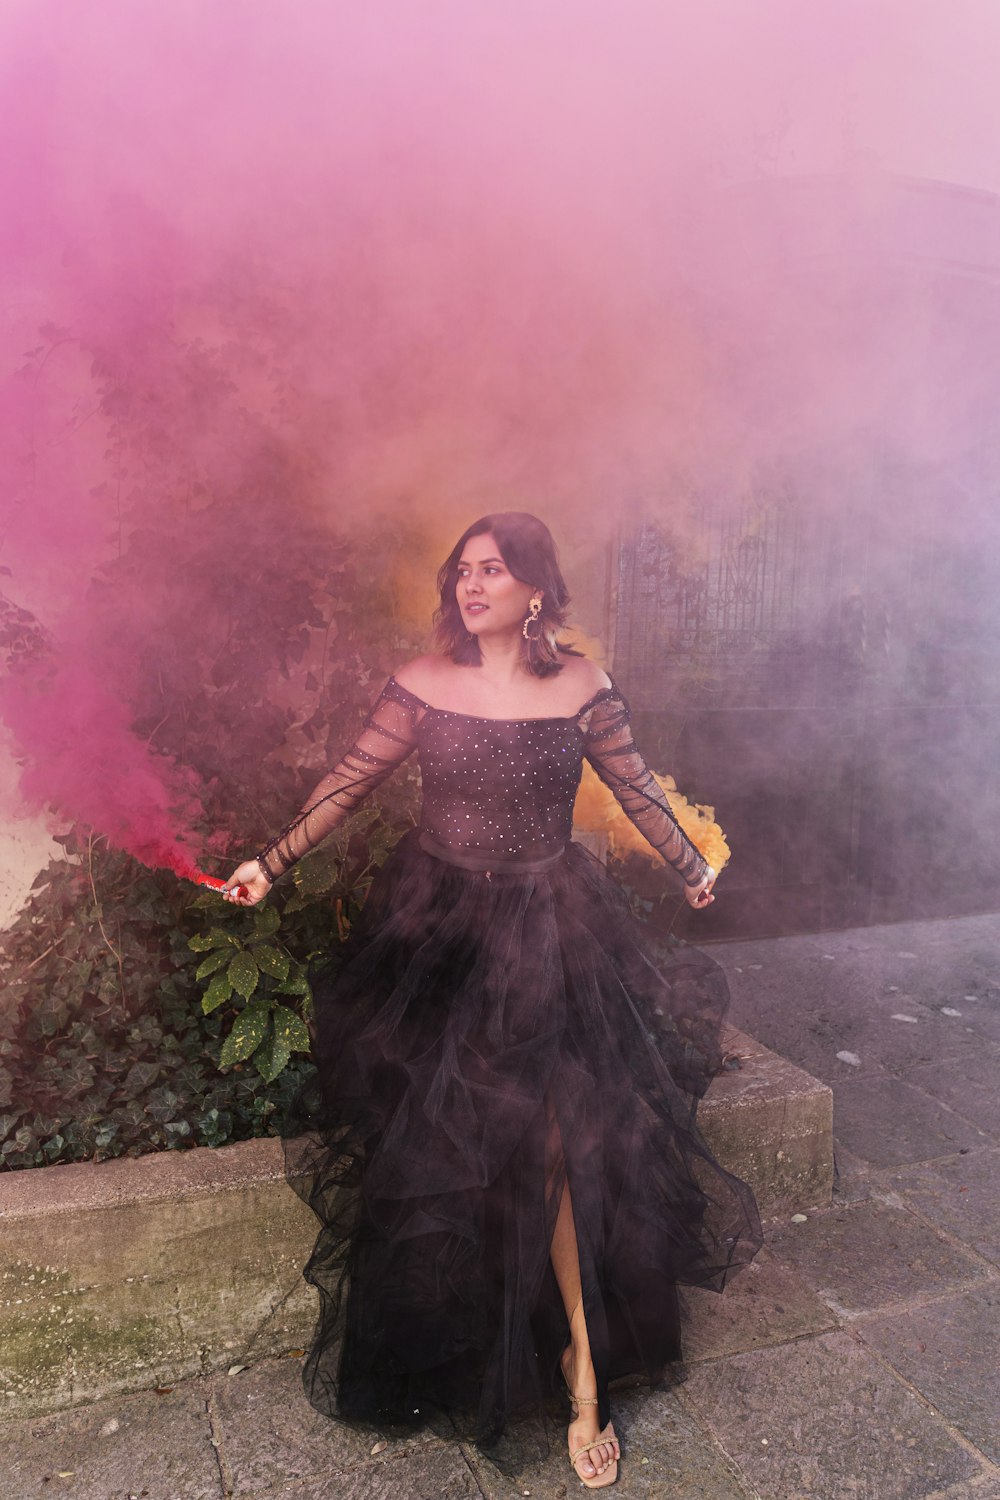 Une femme vêtue d'une longue robe noire tenant une bombe fumigène